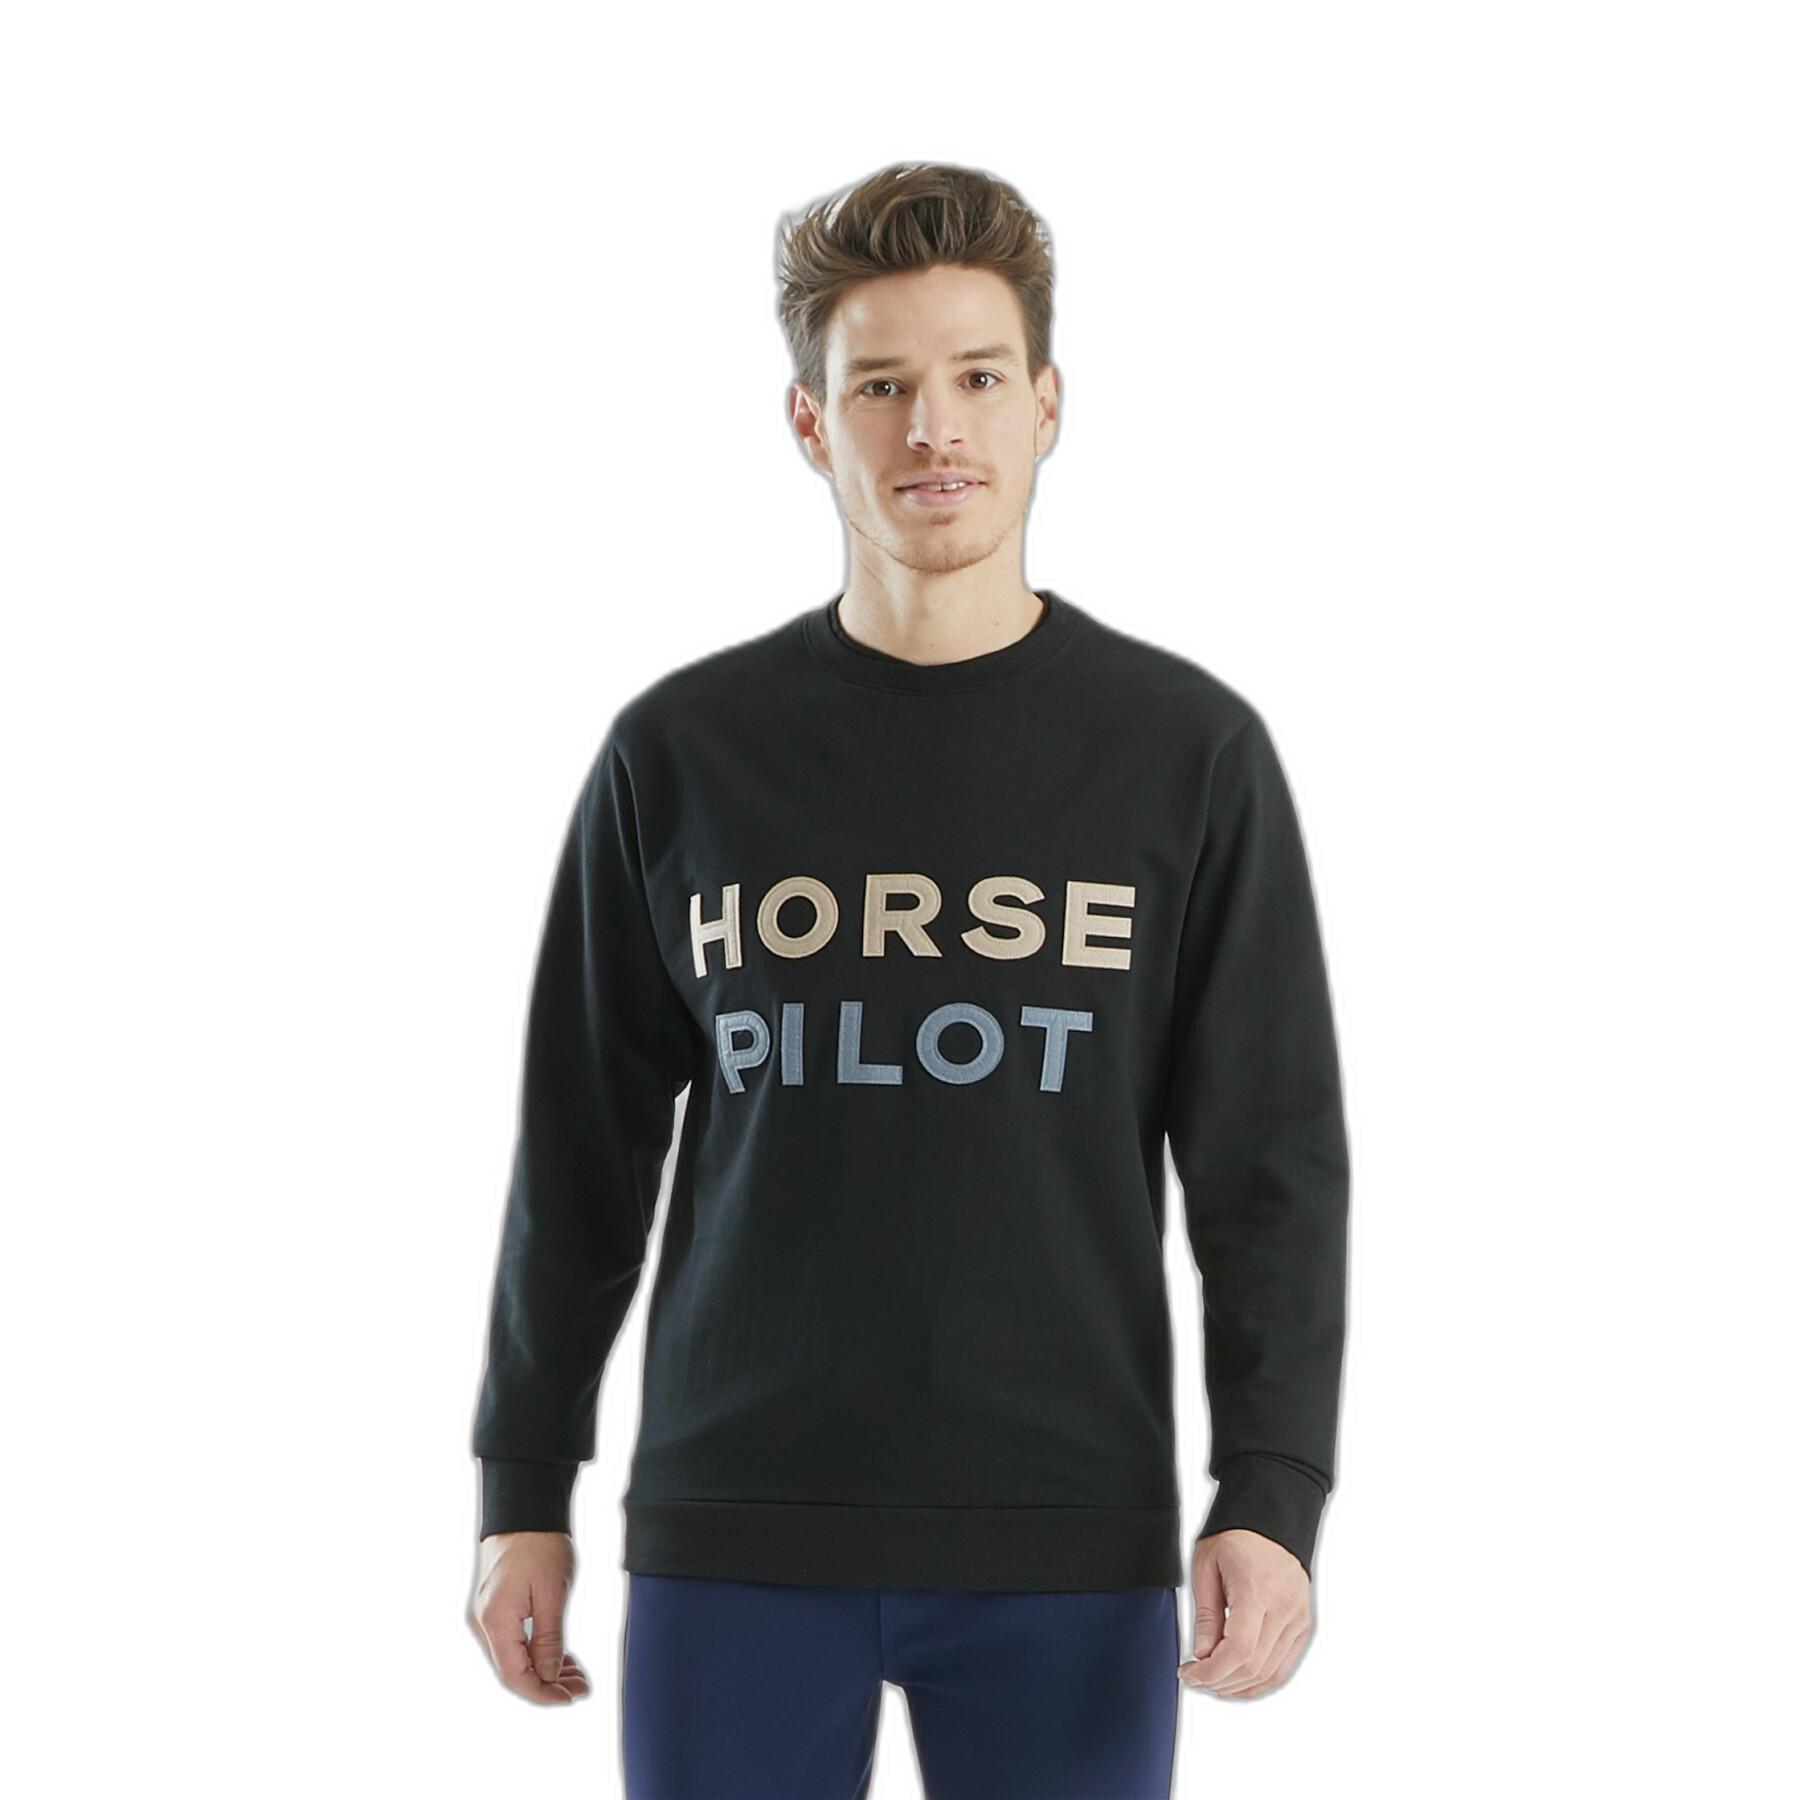 Sweatshirt equitazione Horse Pilot Team